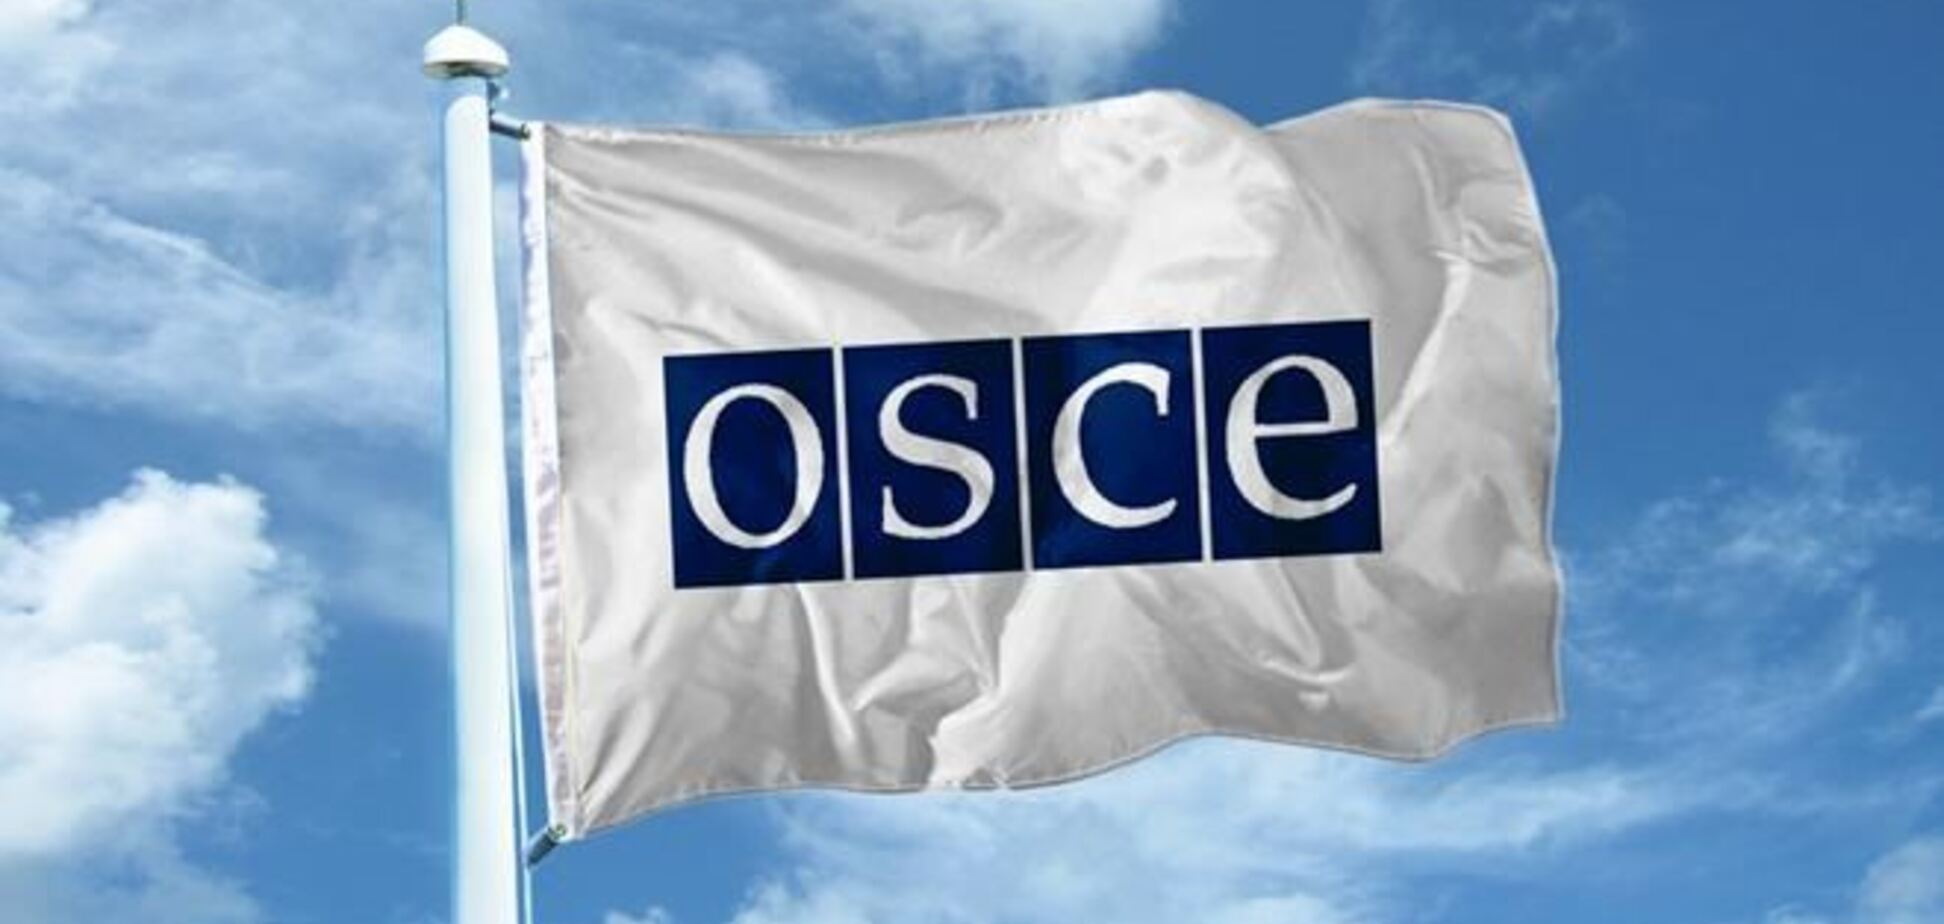 ОБСЄ заявила, що її не запросили спостерігачем на референдум в Криму